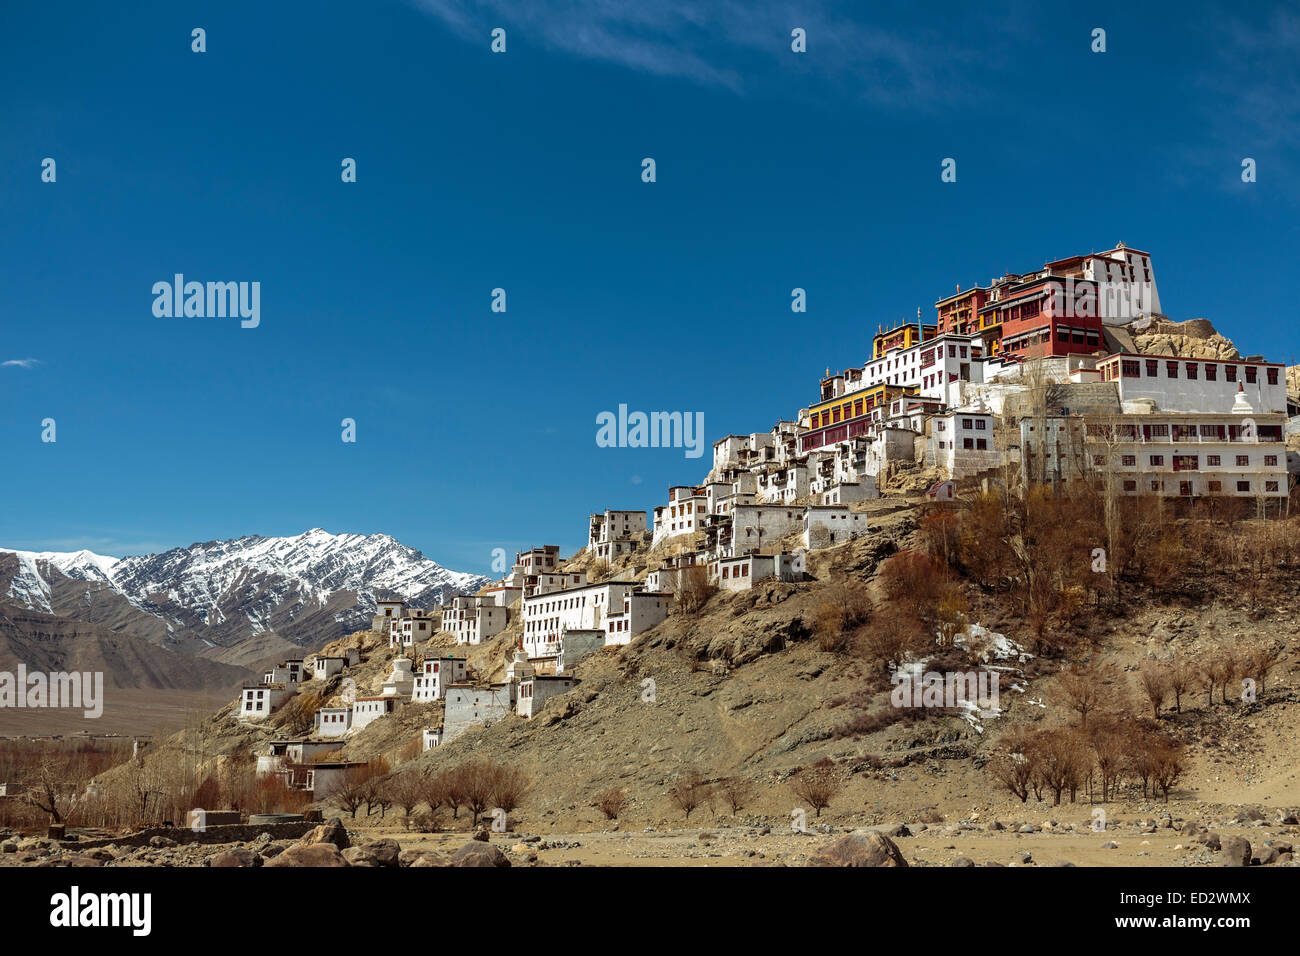 Le monastère de Thiksey au sommet d'un éperon rocheux dans la vallée de l'Indus du Ladakh, Inde du nord. C'est un bouddhiste de style tibétain Gompa. Banque D'Images